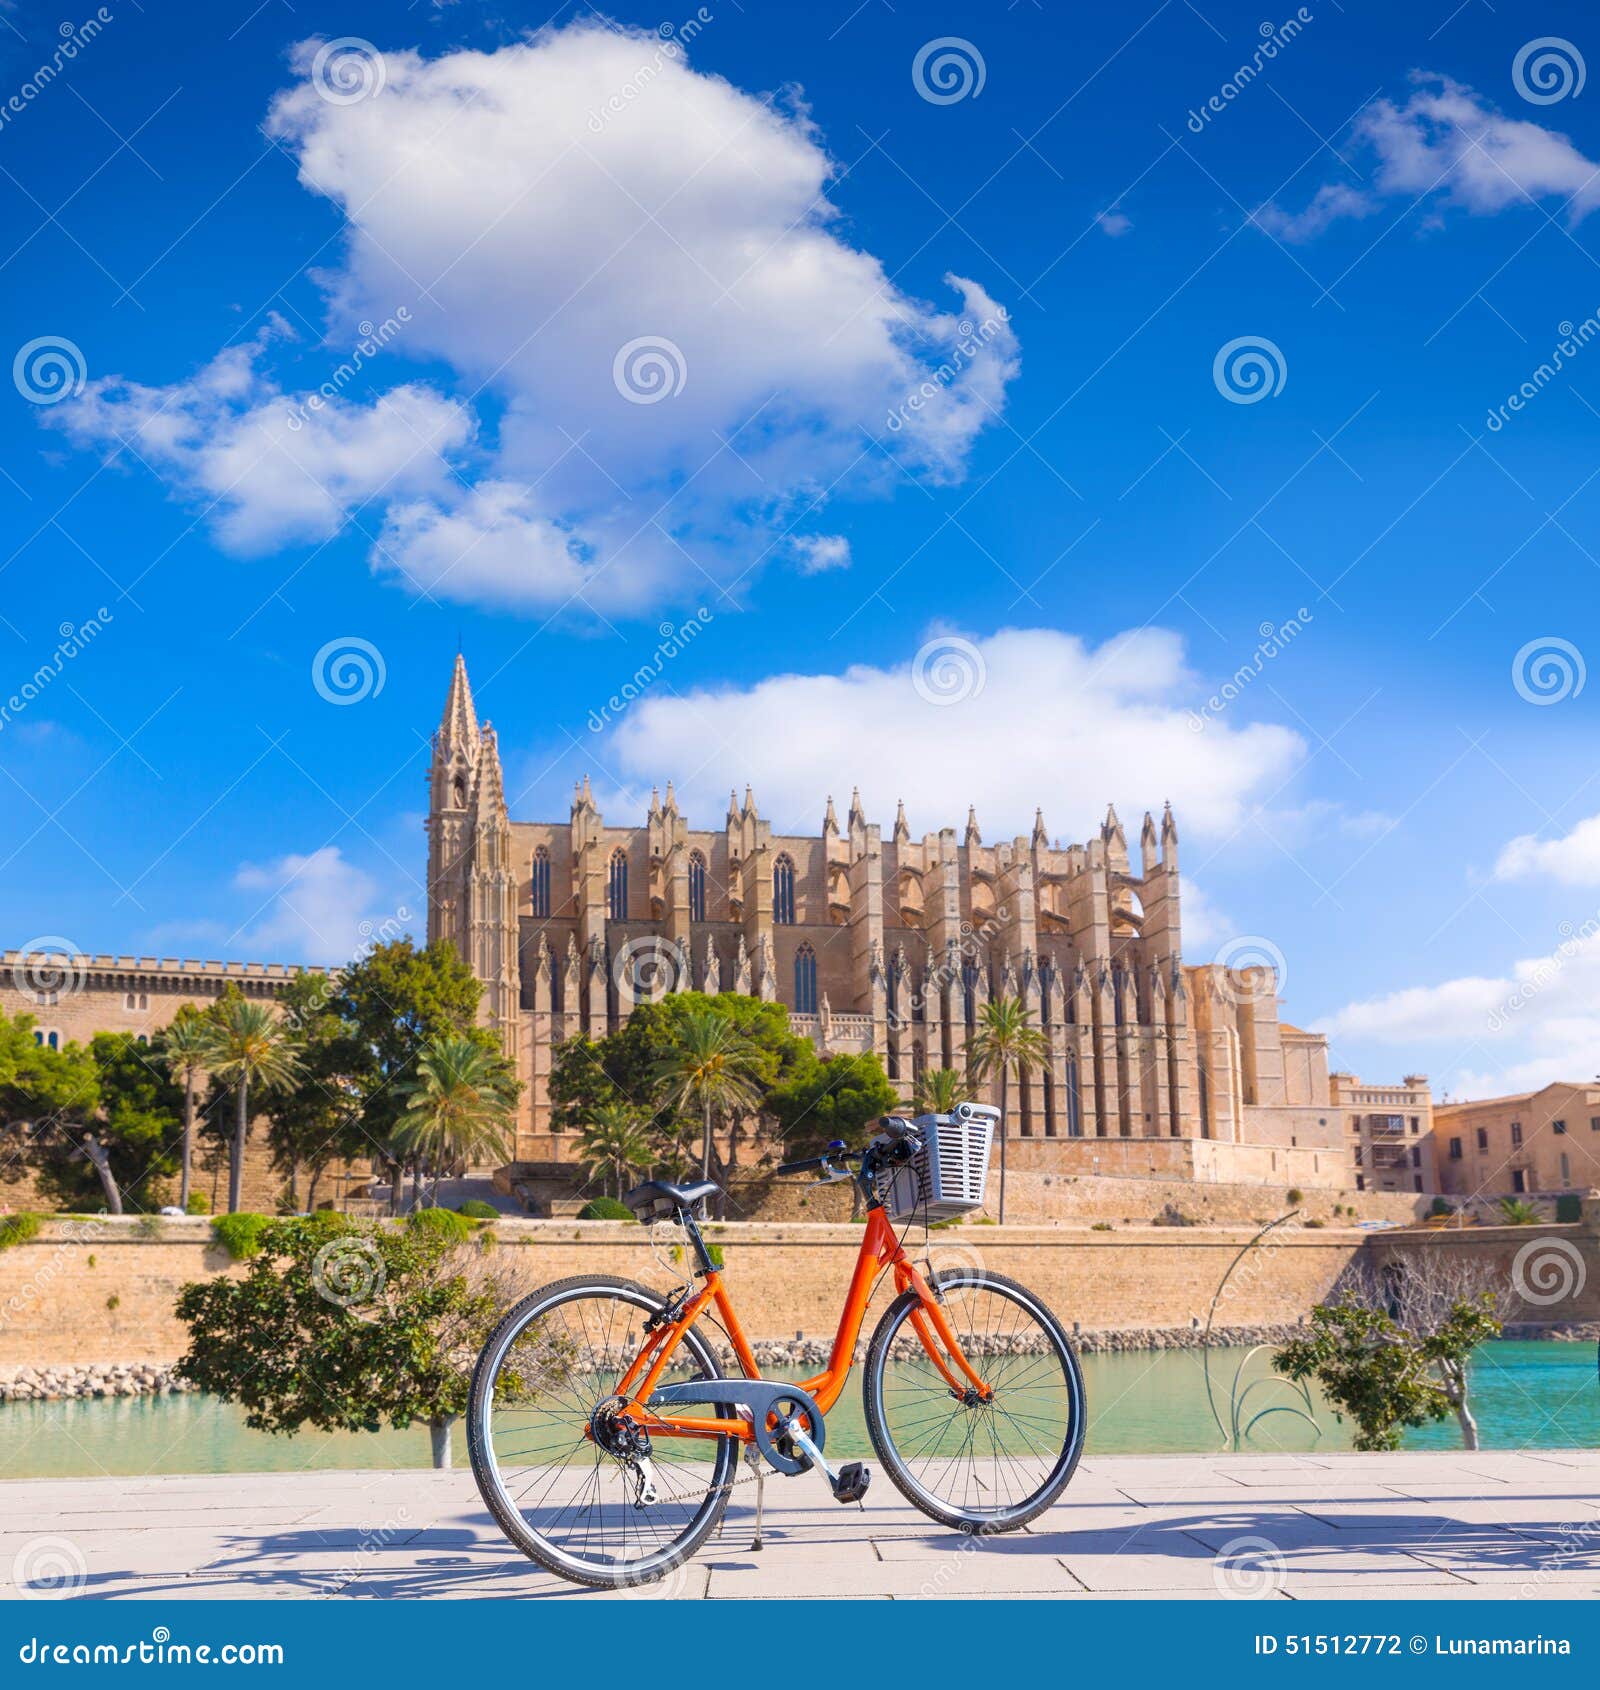 majorca palma cathedral seu and bicycle mallorca